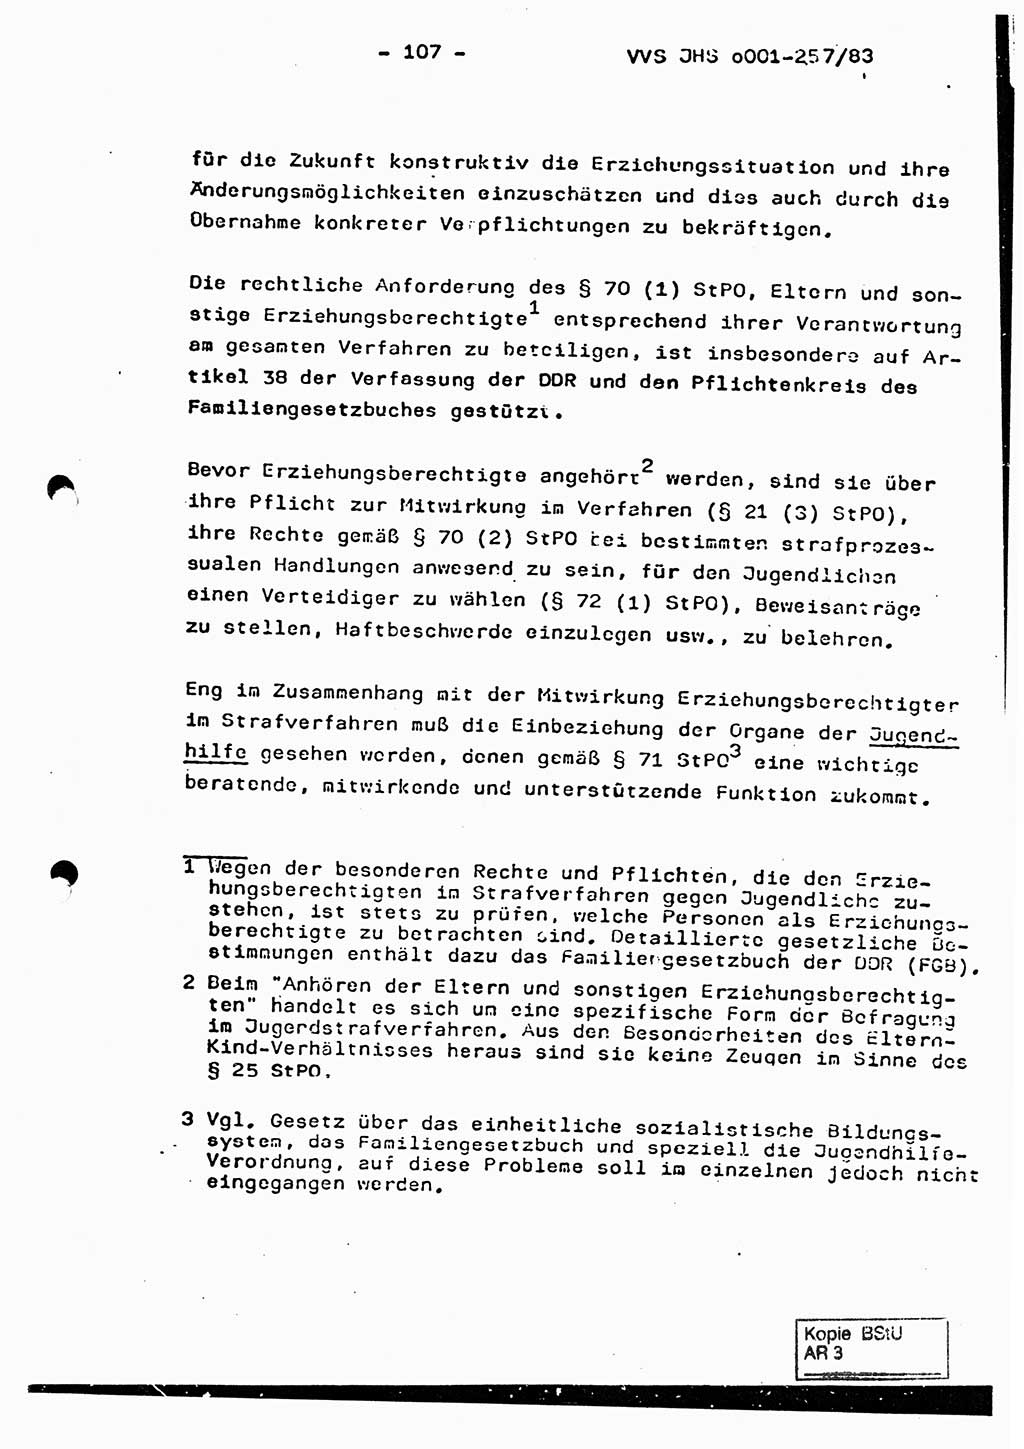 Dissertation, Oberst Helmut Lubas (BV Mdg.), Oberstleutnant Manfred Eschberger (HA IX), Oberleutnant Hans-Jürgen Ludwig (JHS), Ministerium für Staatssicherheit (MfS) [Deutsche Demokratische Republik (DDR)], Juristische Hochschule (JHS), Vertrauliche Verschlußsache (VVS) o001-257/83, Potsdam 1983, Seite 107 (Diss. MfS DDR JHS VVS o001-257/83 1983, S. 107)